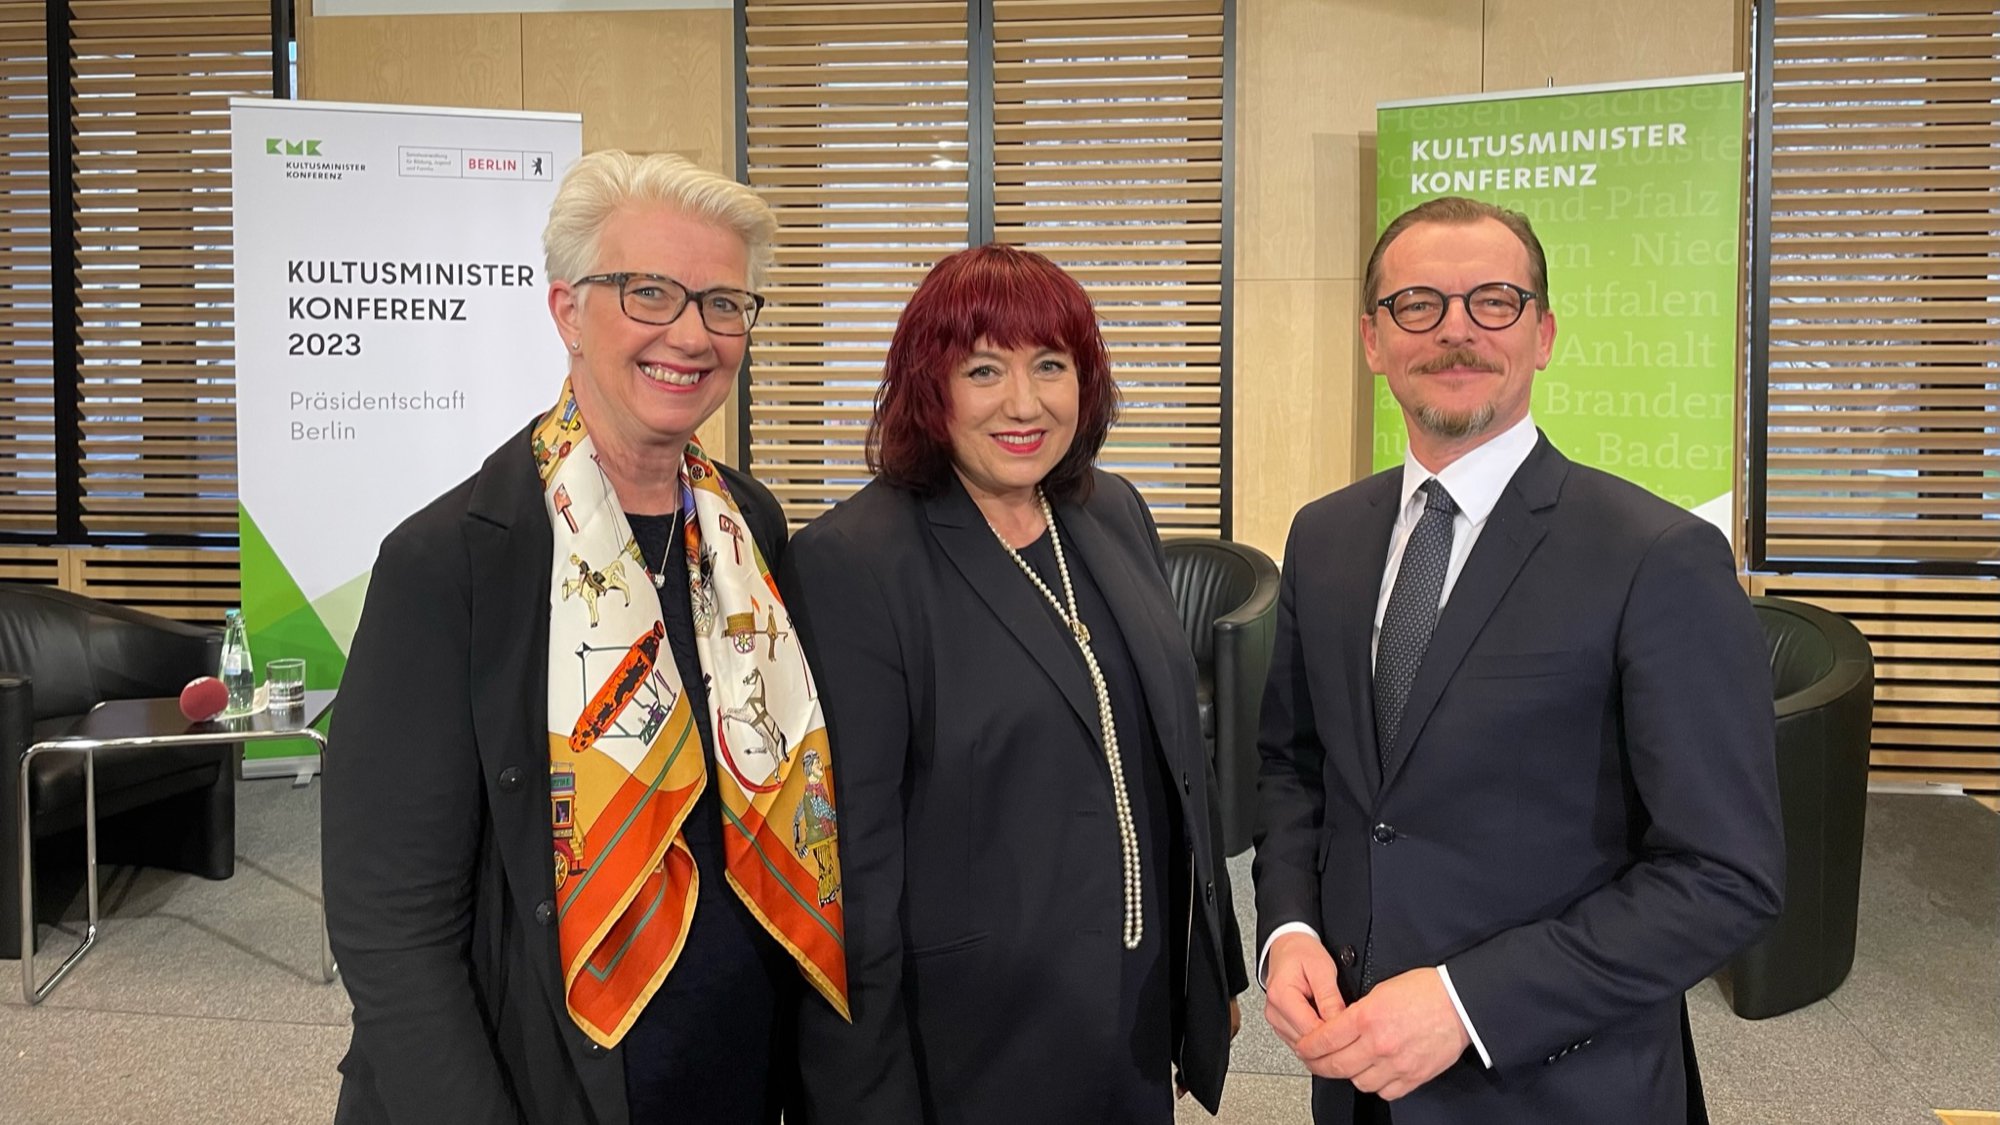 Gratulation an die neue KMK-Präsidentin Astrid-Sabine Busse